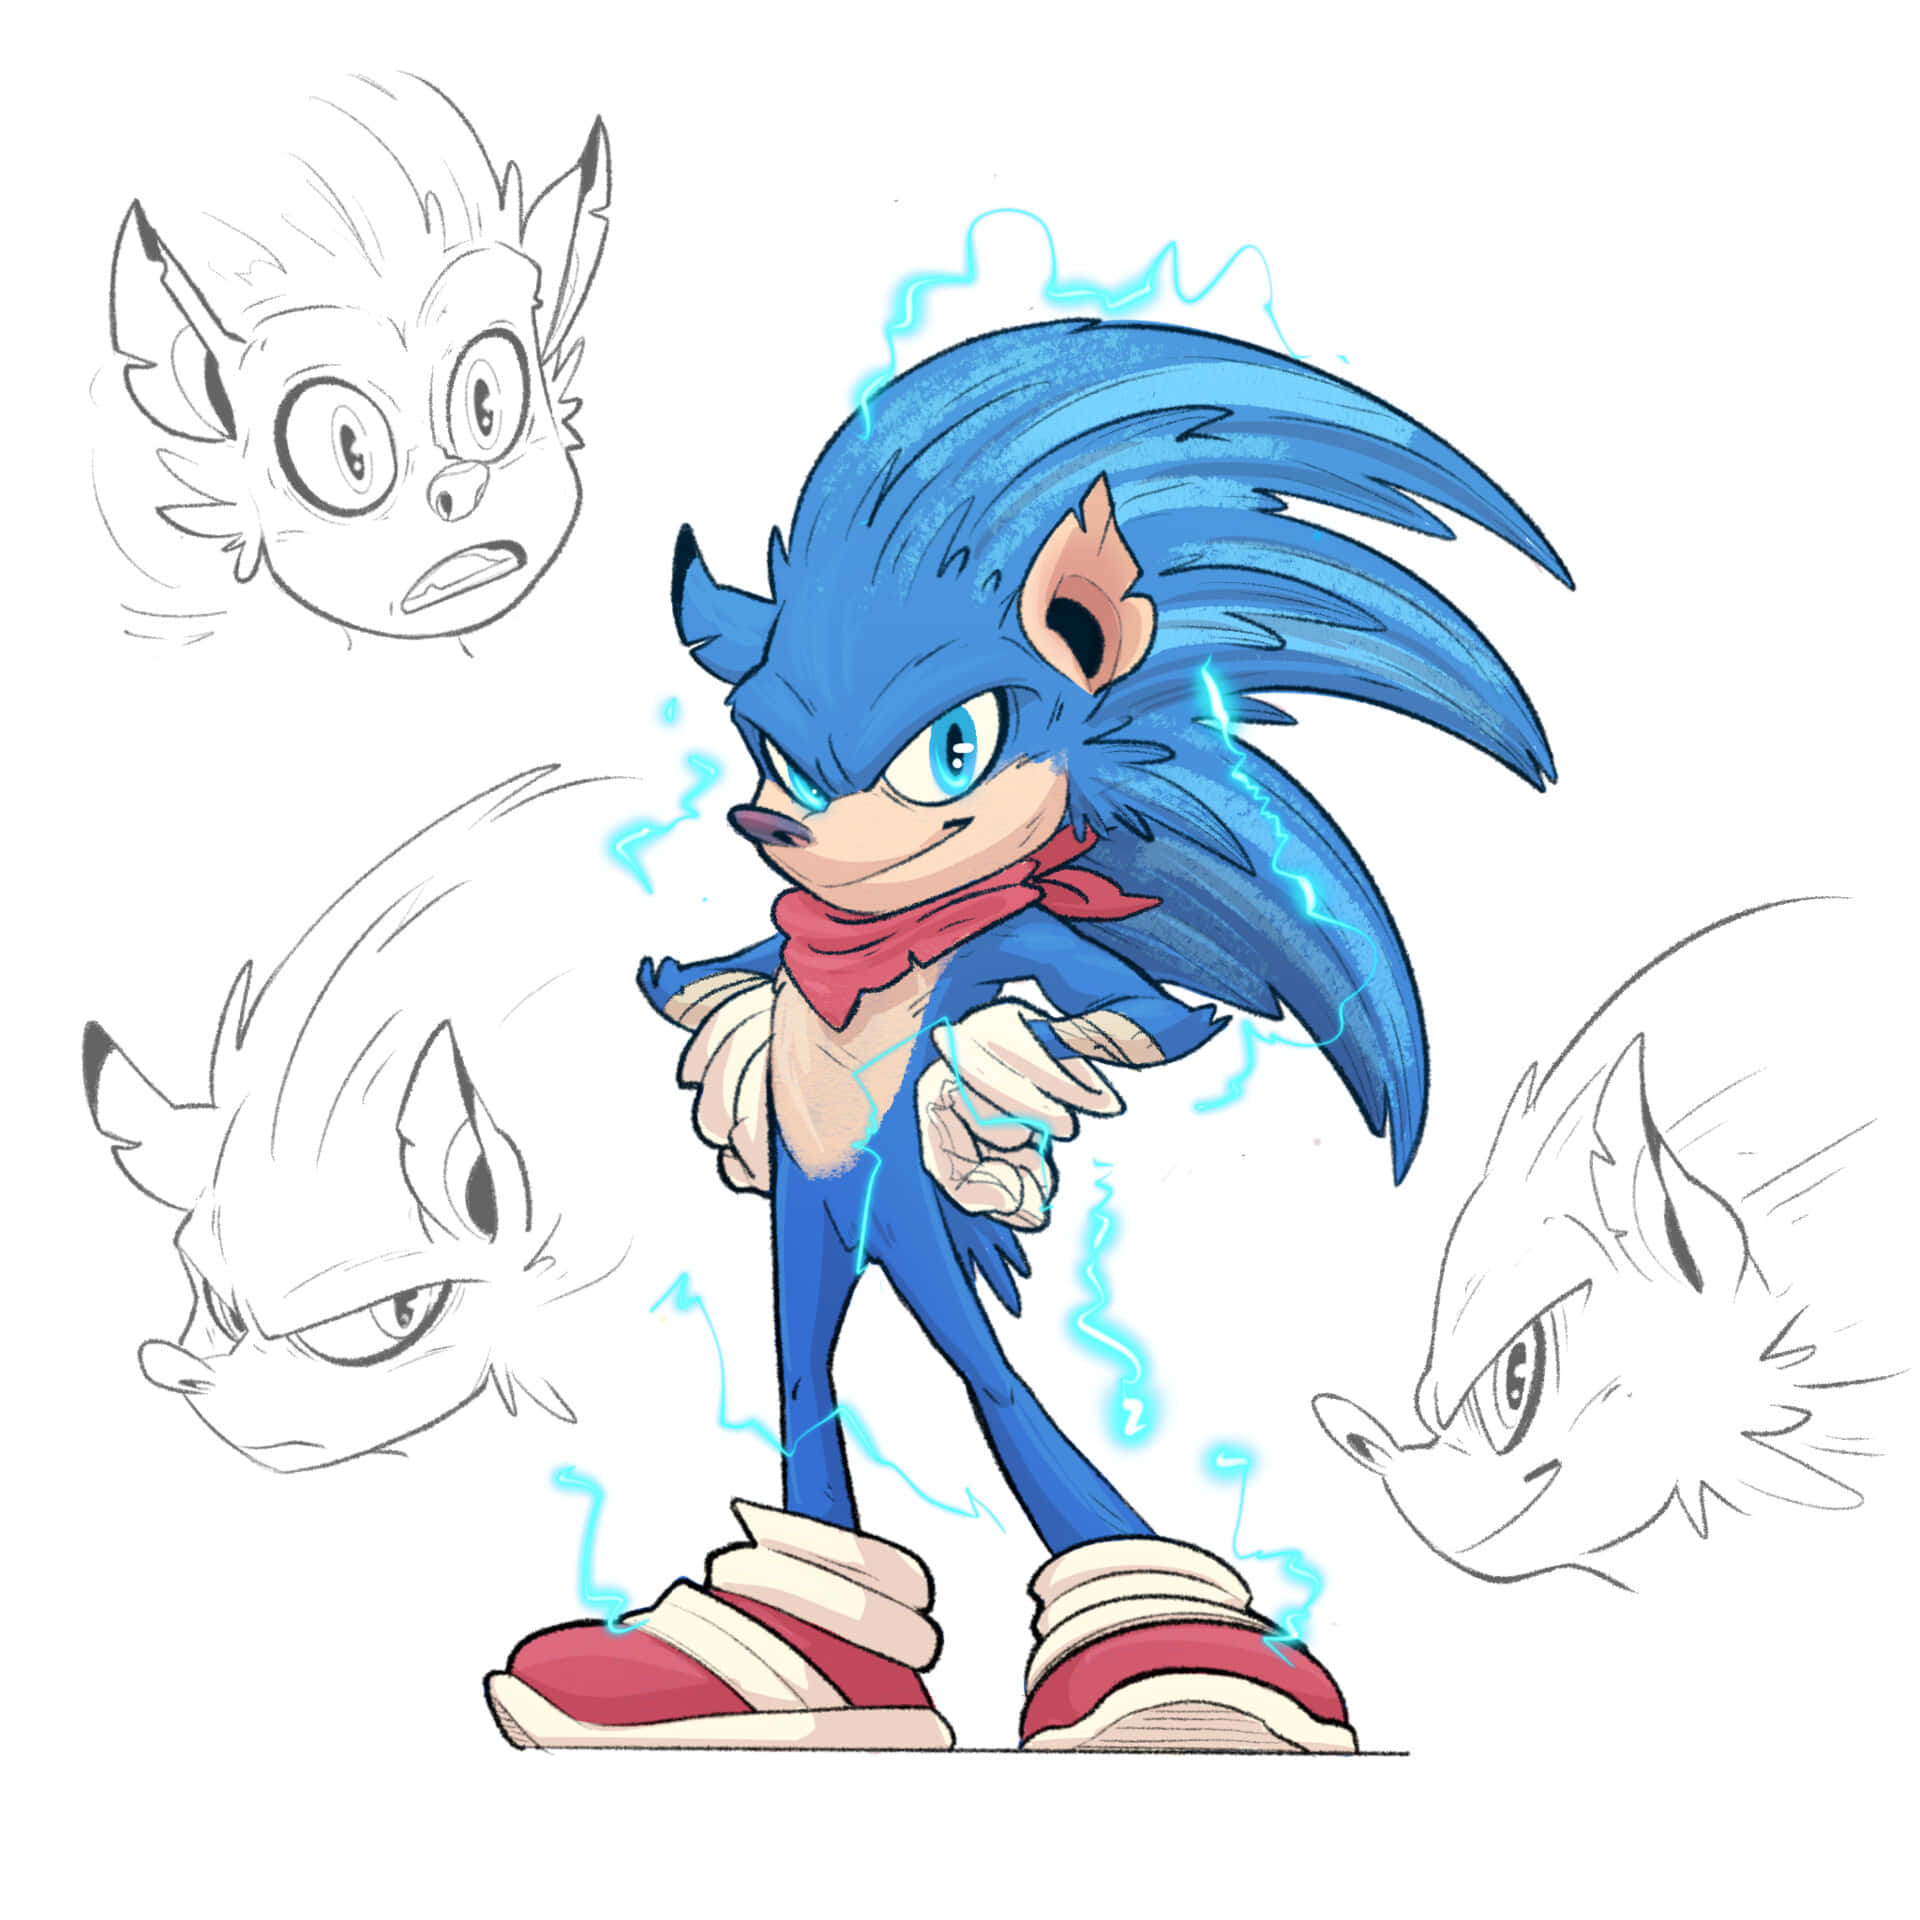 Sonicthe Hedgehog Tegning Af Sonicthehedgehog.